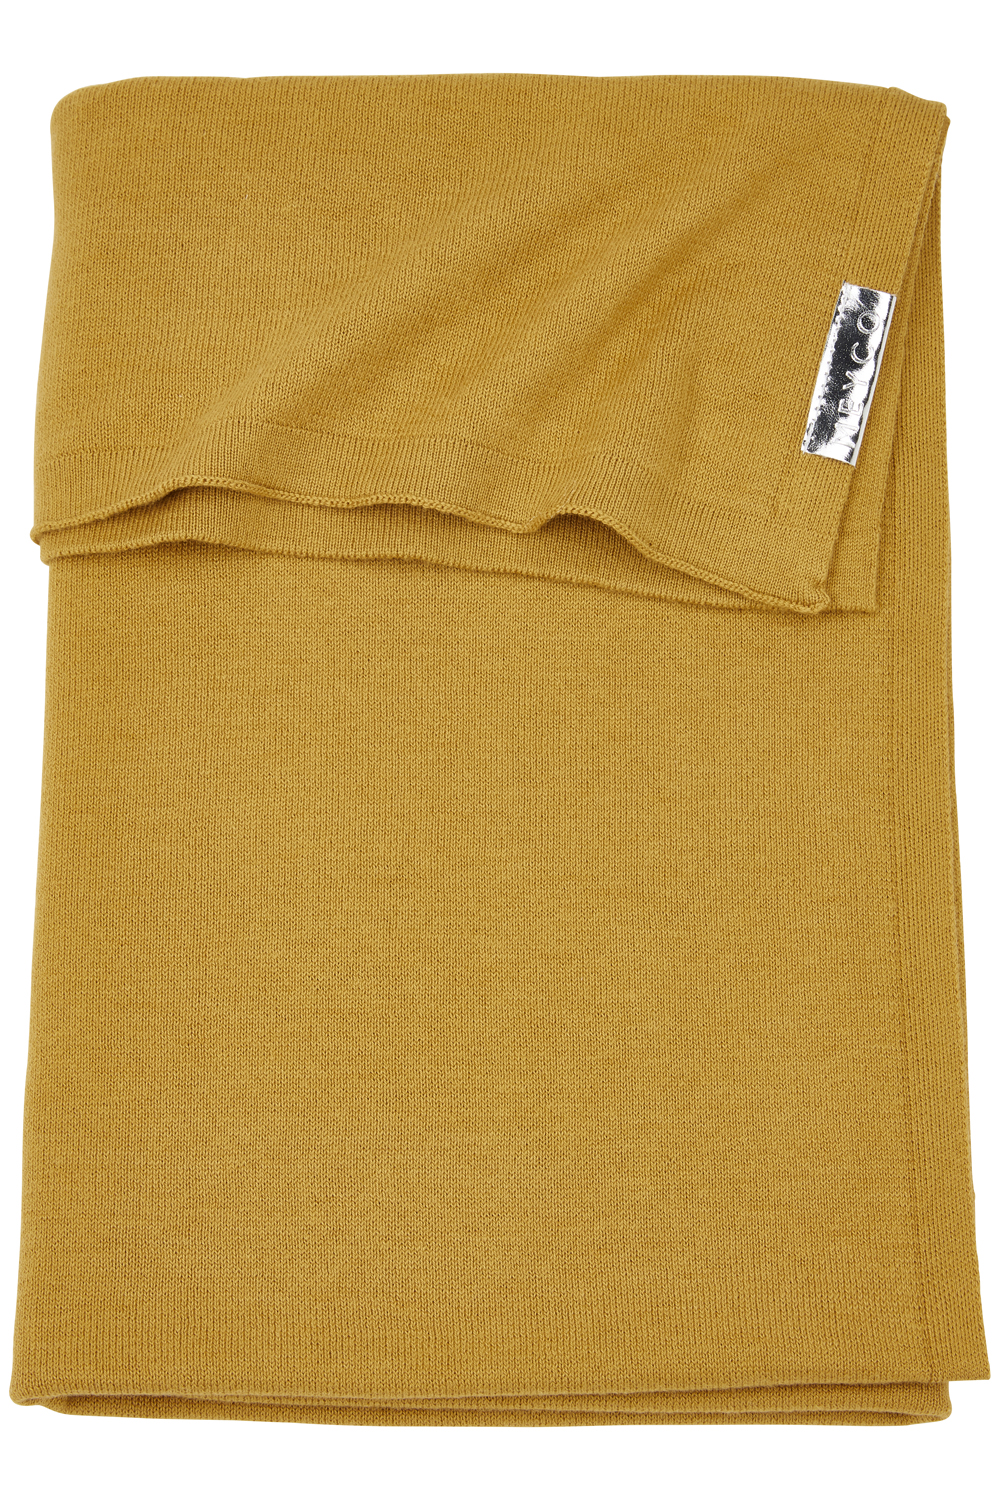 Ledikantdeken Knit Basic - Honey Gold - 100x150cm